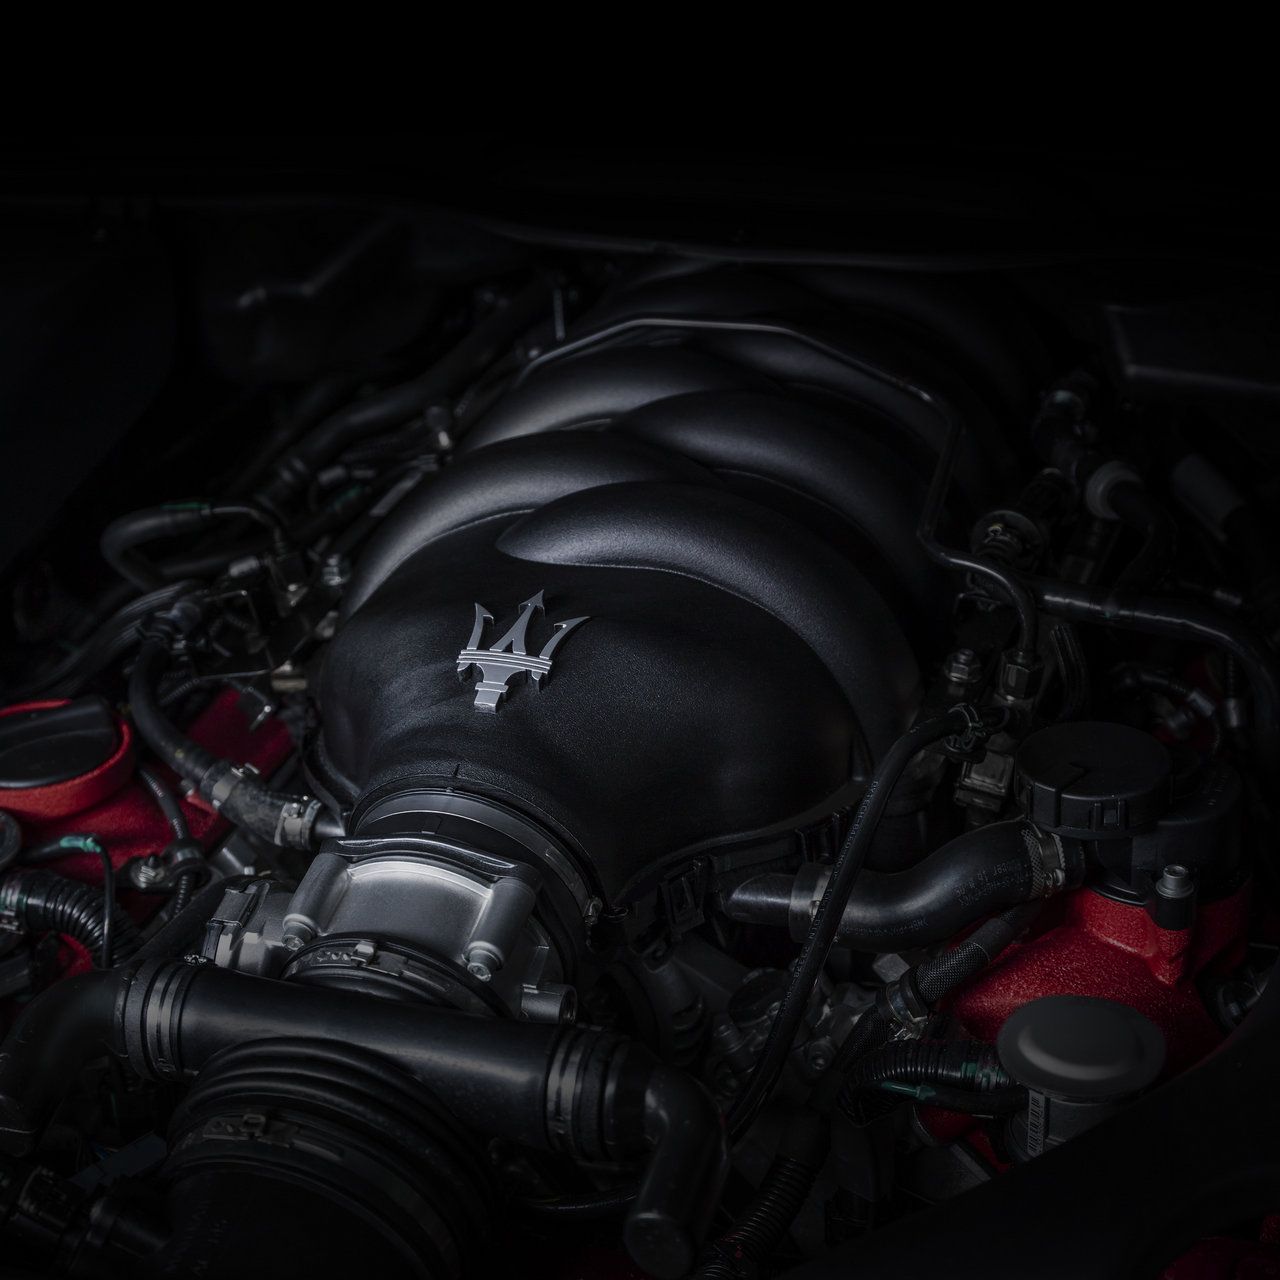 GranTurismo Maserati - V8 engine